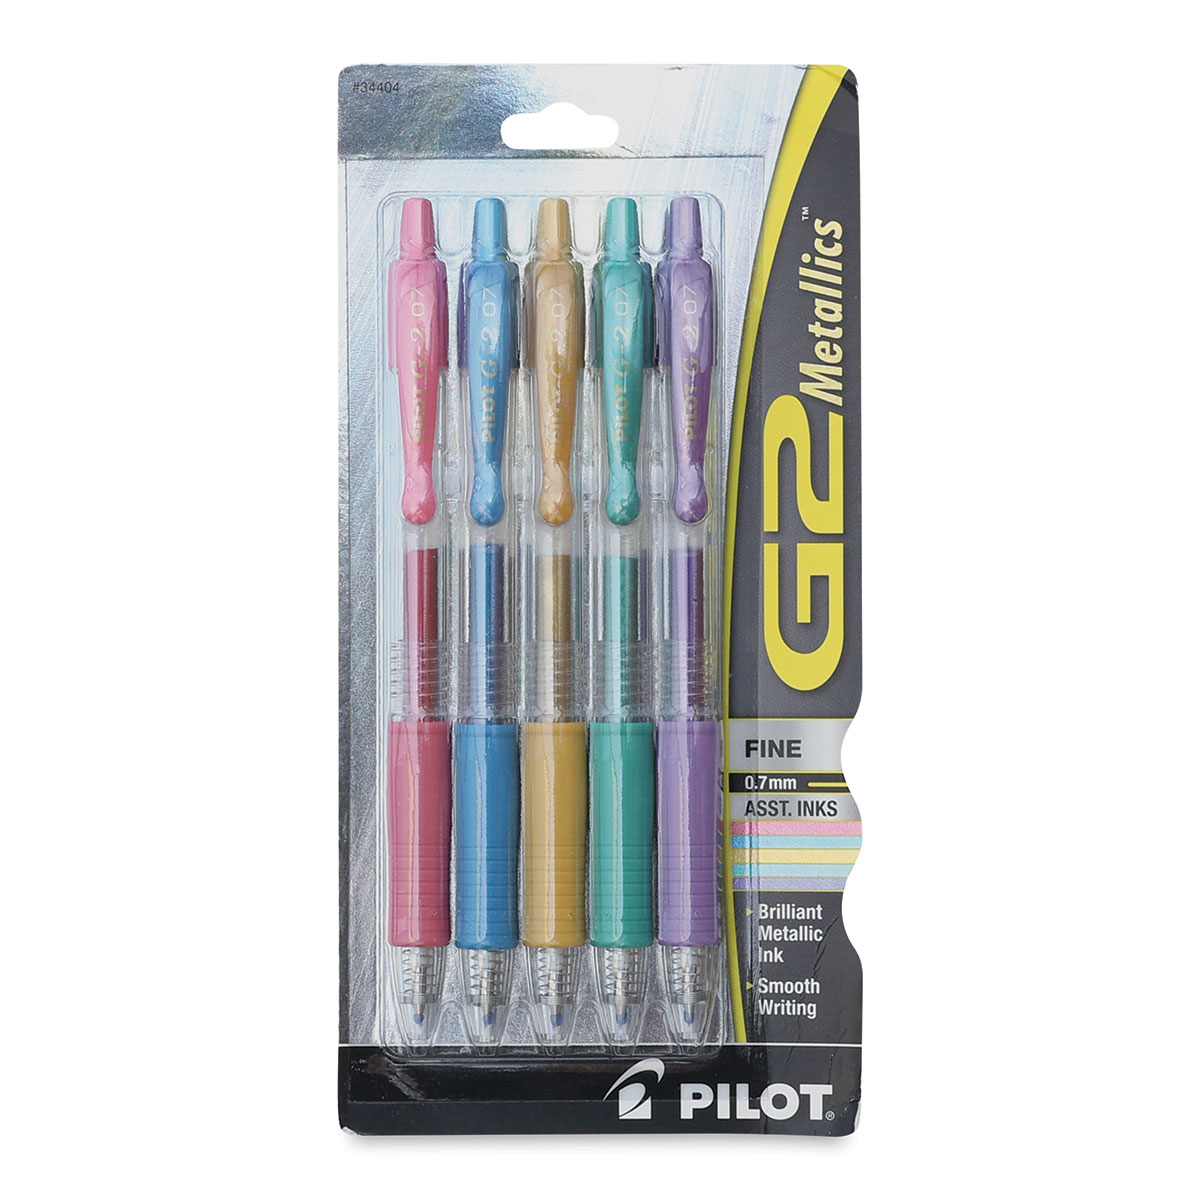 Pilot G2 Pastels Fine Point Pens - 5 ct